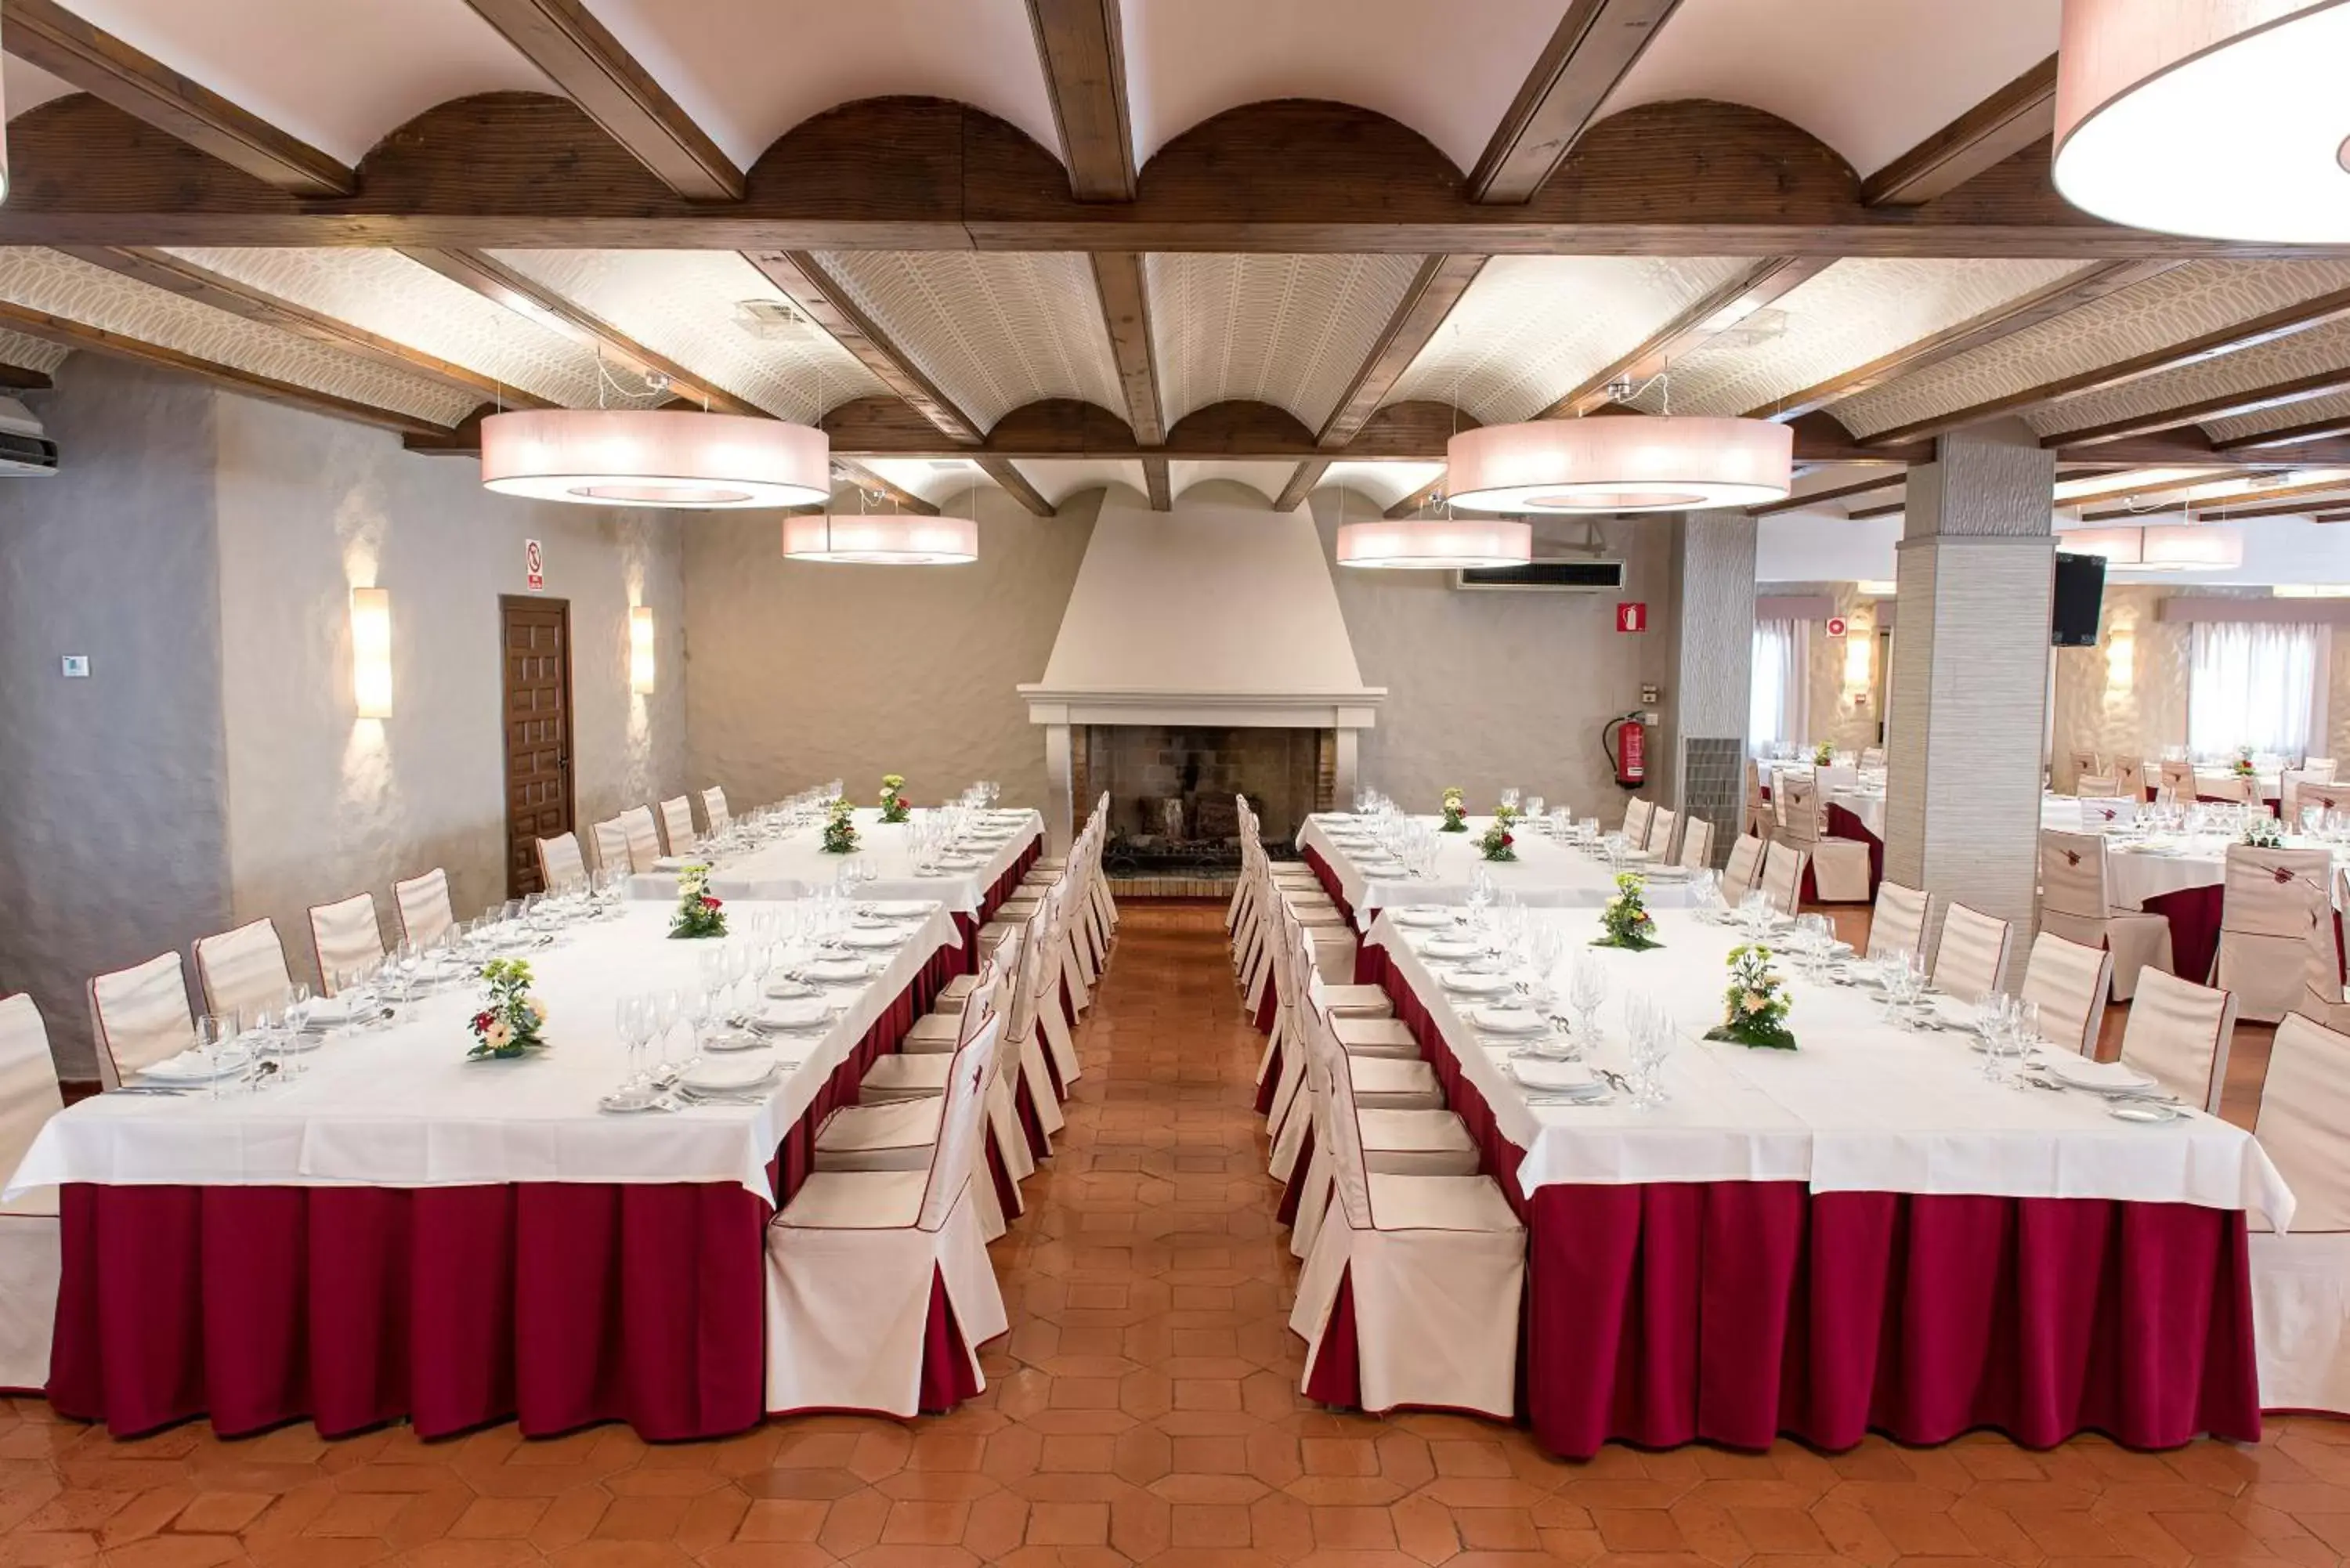 Banquet/Function facilities, Banquet Facilities in Hotel La Carreta